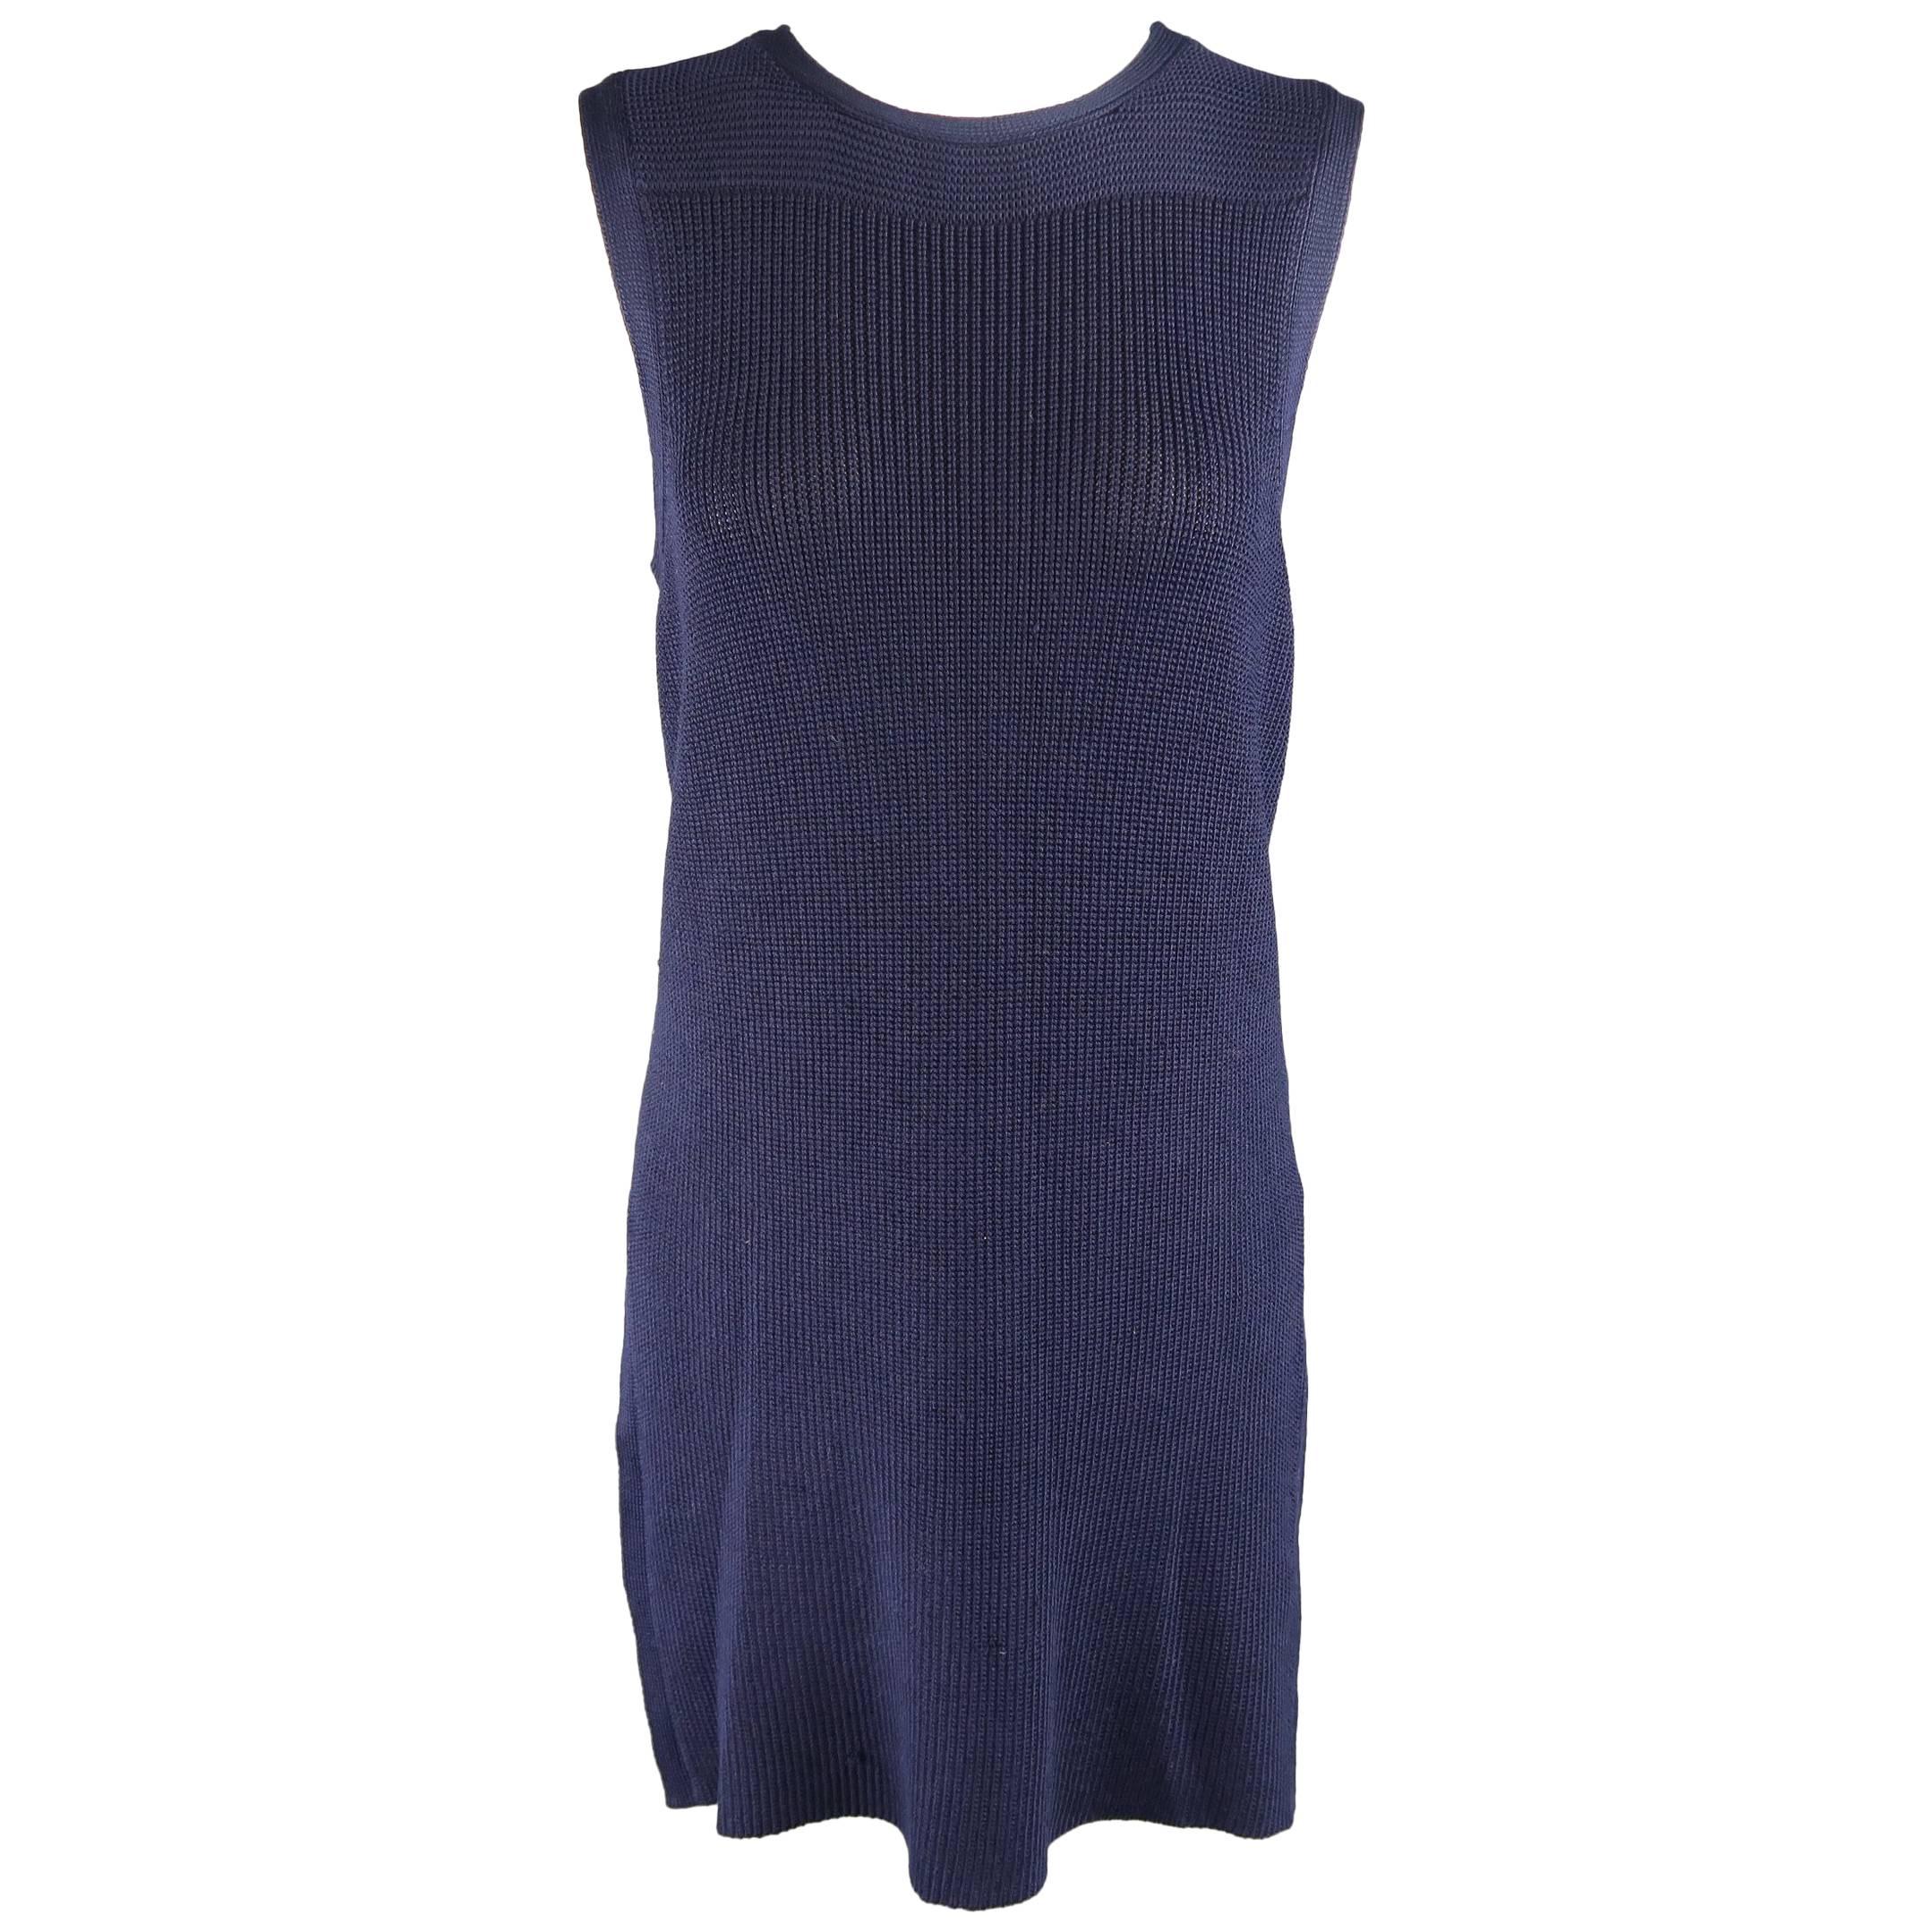 RALPH LAUREN Collection Size M Navy Silk Blend Sleeveless Long Sweater Vest Top